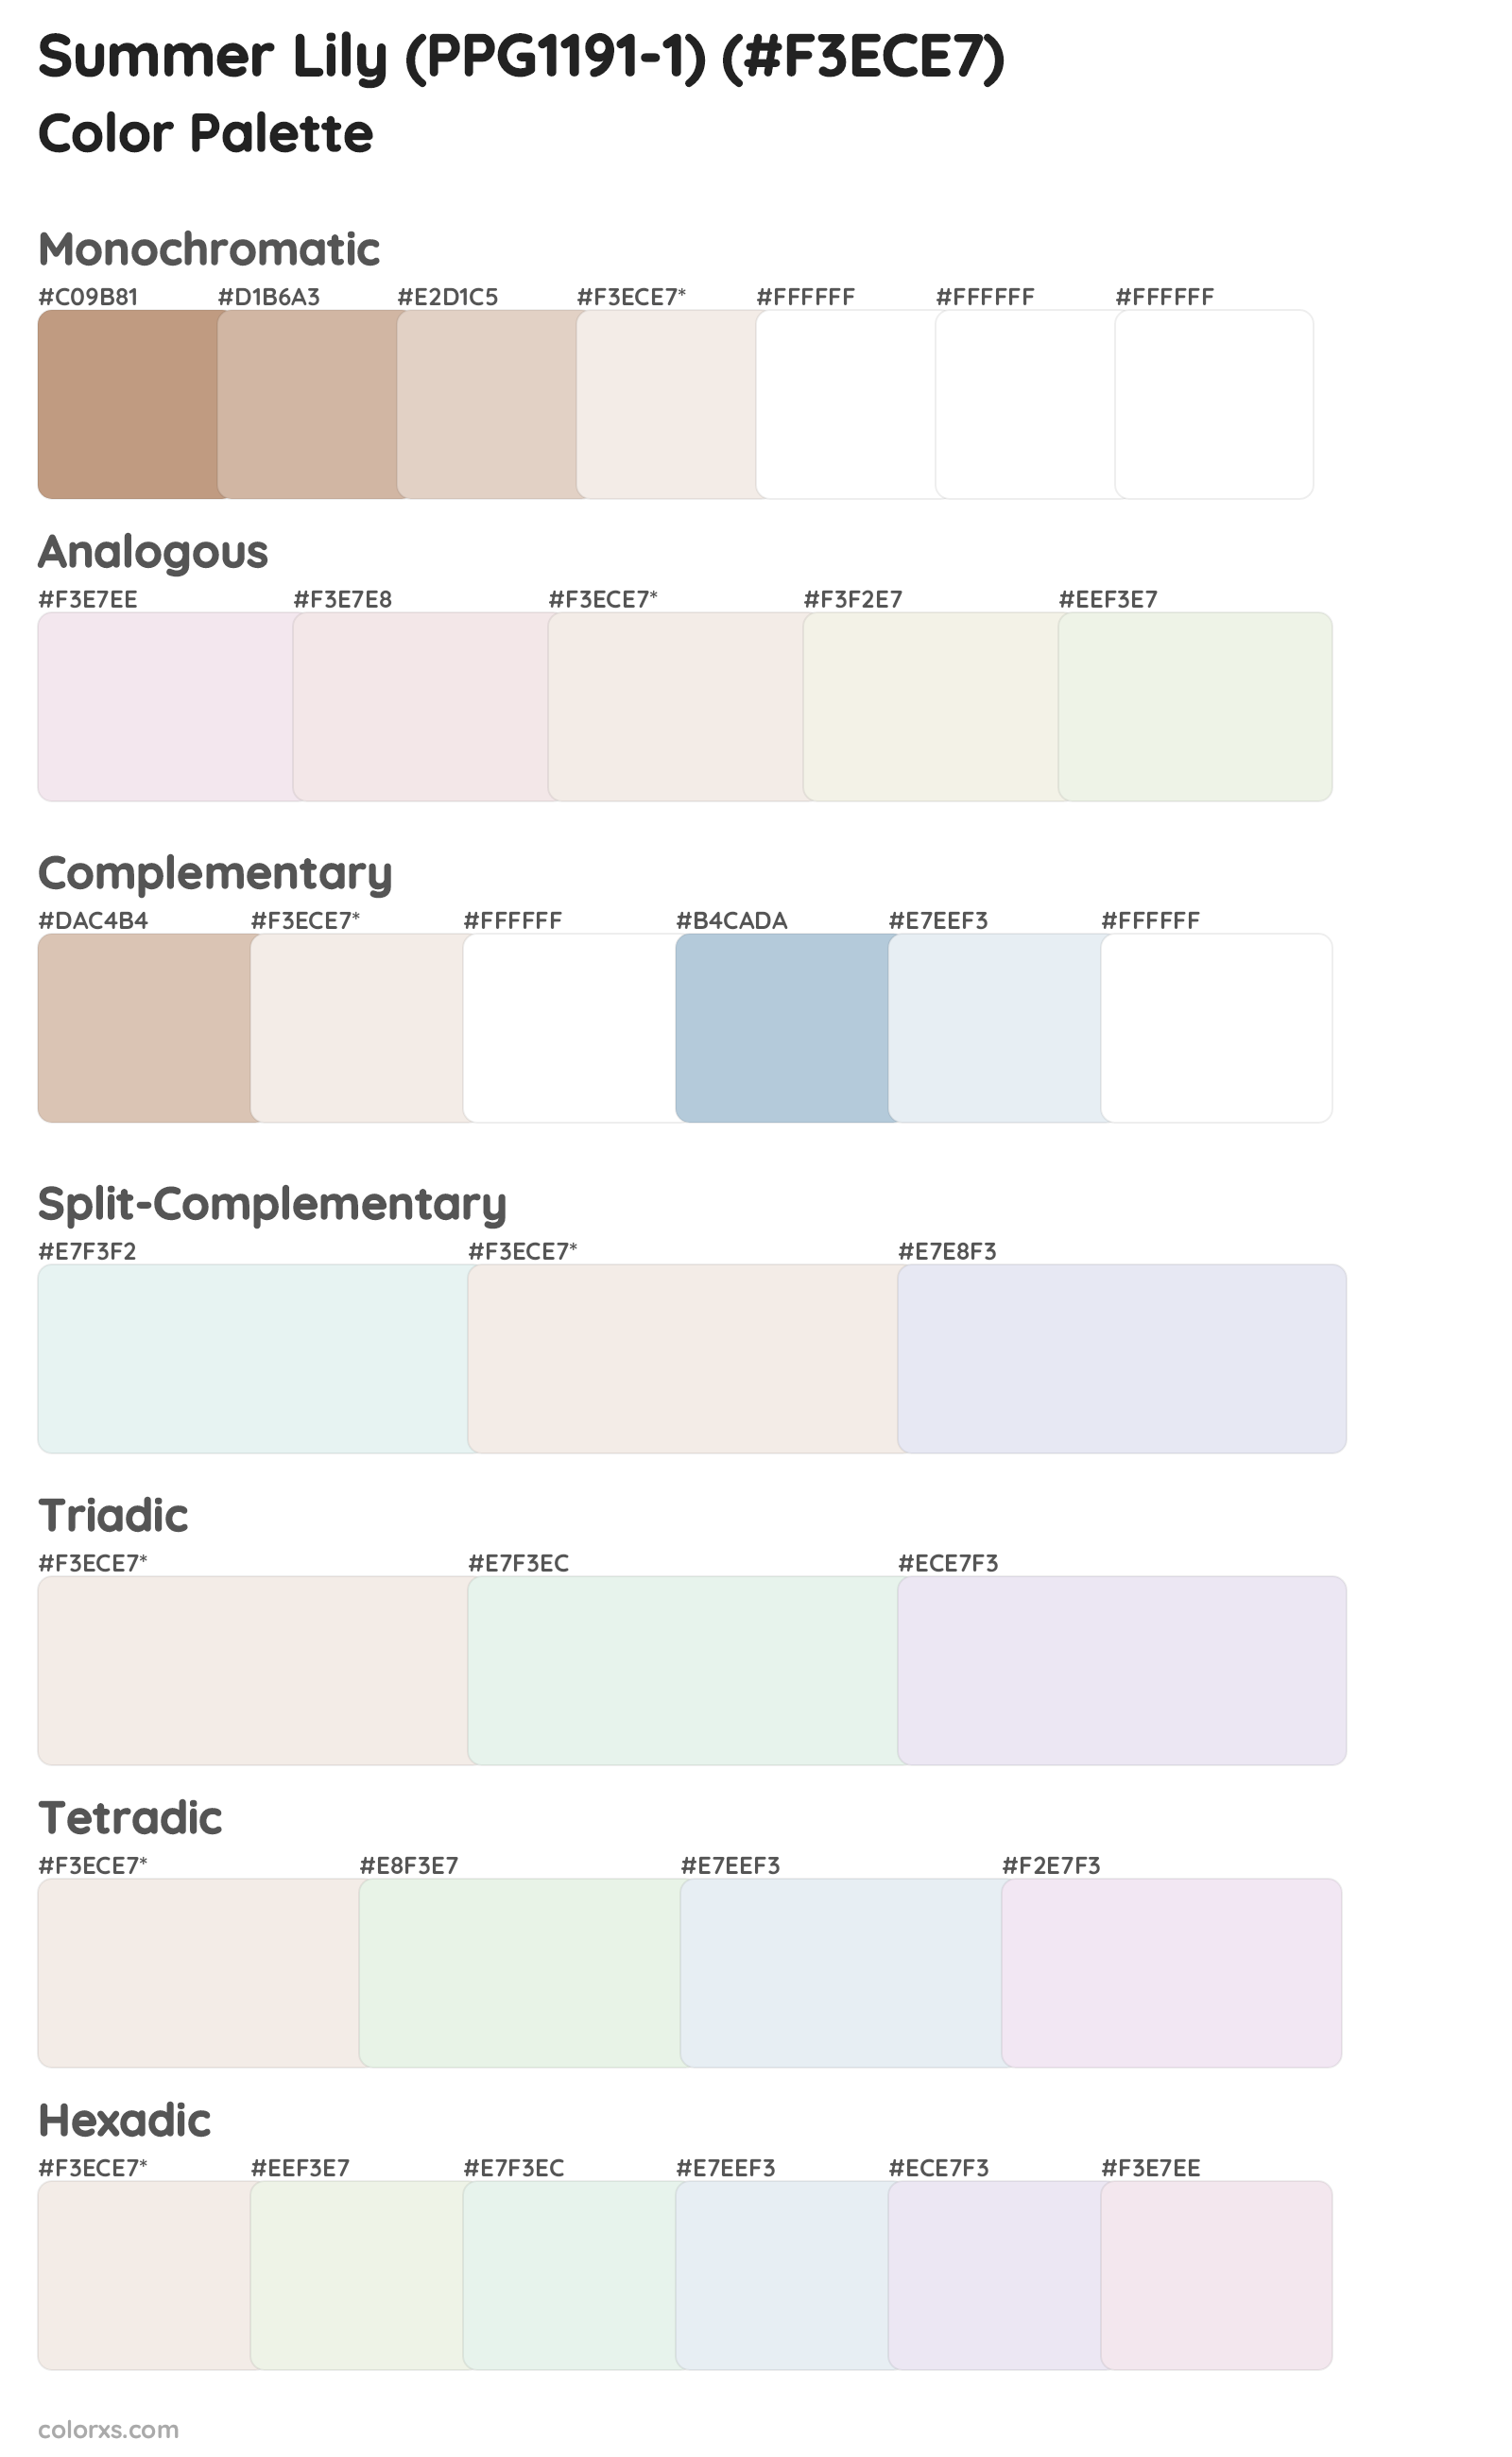 Summer Lily (PPG1191-1) Color Scheme Palettes